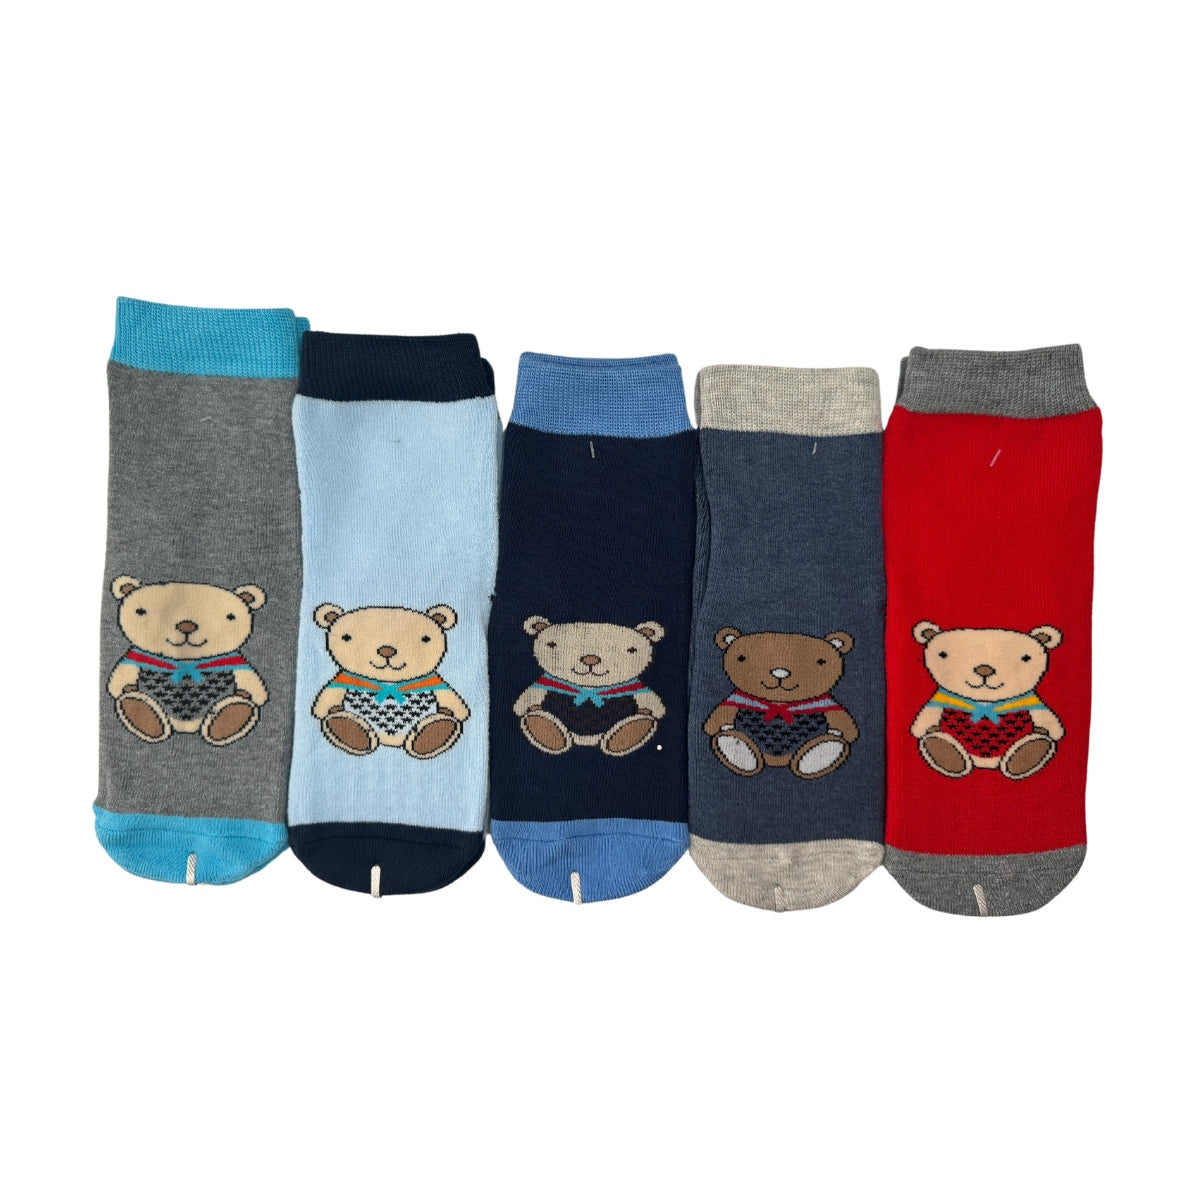 calcetines antiderrapantes para niños varias tallas (12 pares)